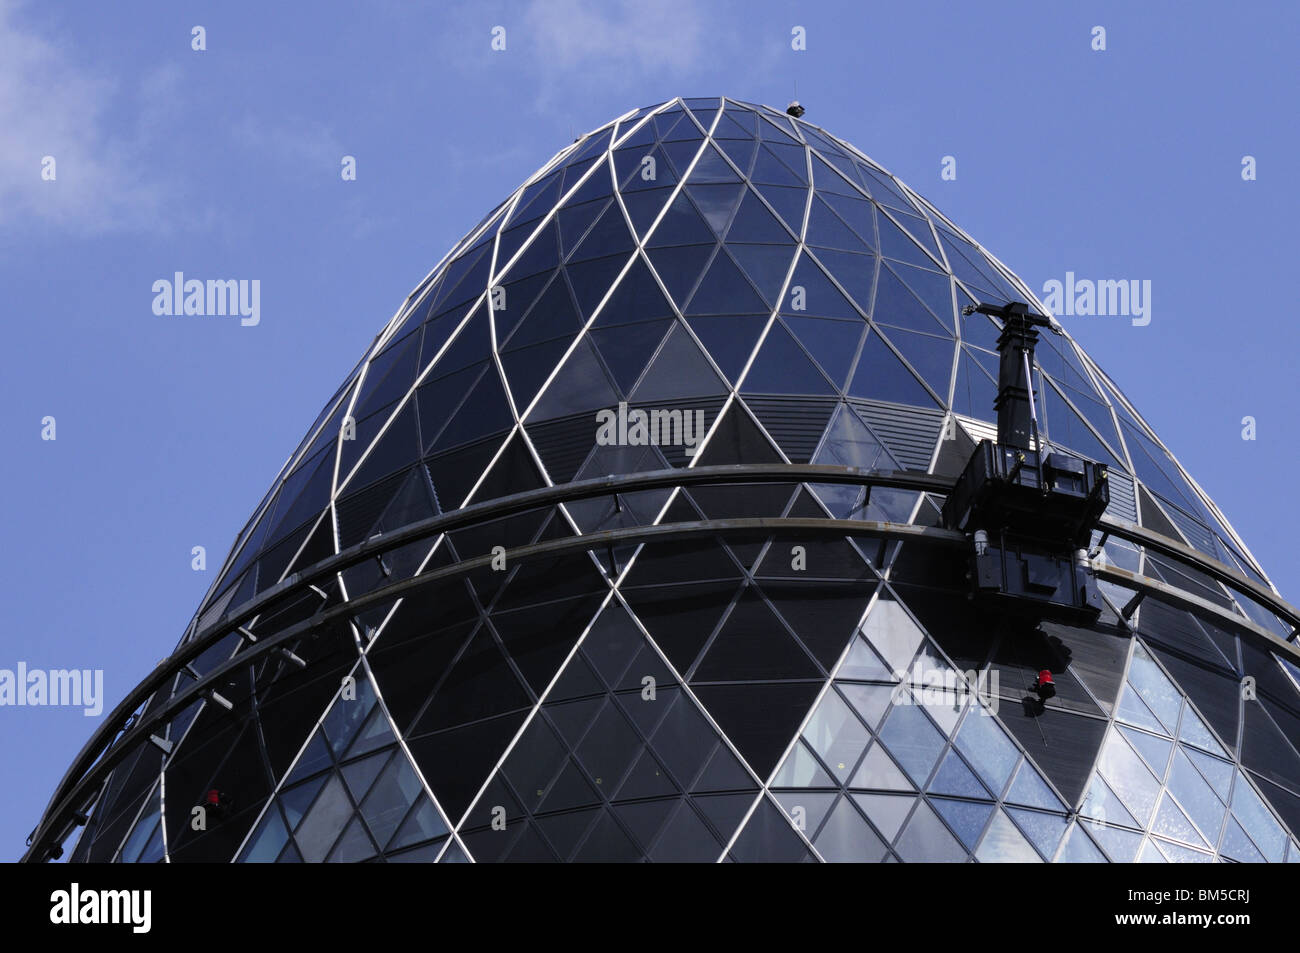 Détail de la partie supérieure de 30 St Mary Axe, le Gherkin building, Londres, Angleterre, Royaume-Uni Banque D'Images